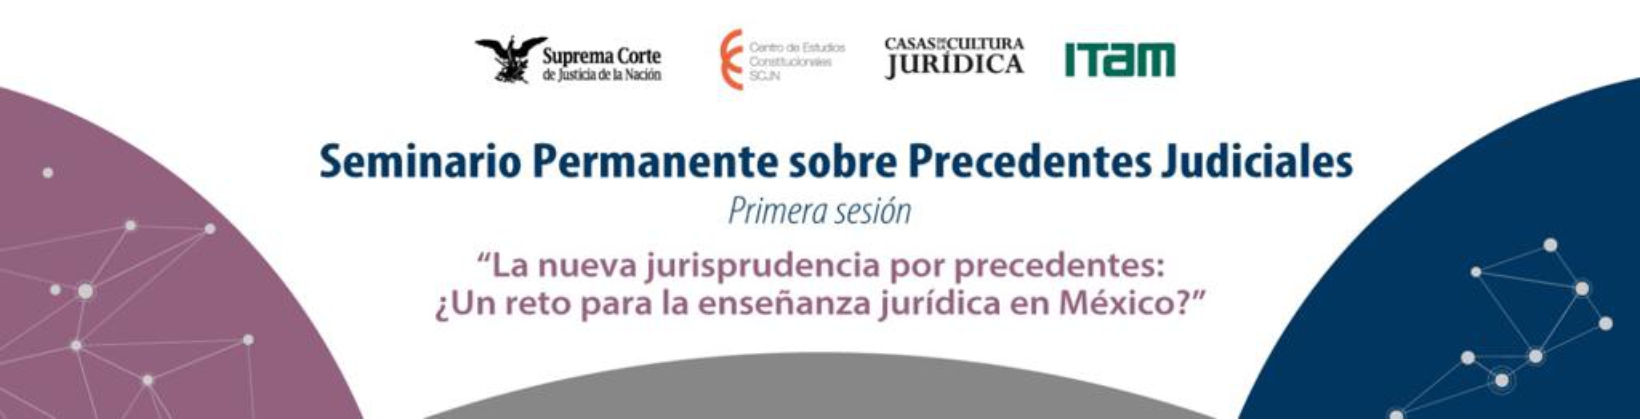 Banner del Seminario Permanente sobre Precedentes Judiciales: Primera sesión: La nueva jurisprudencia por precedentes: ¿Un reto para la enseñanza jurídica en México?